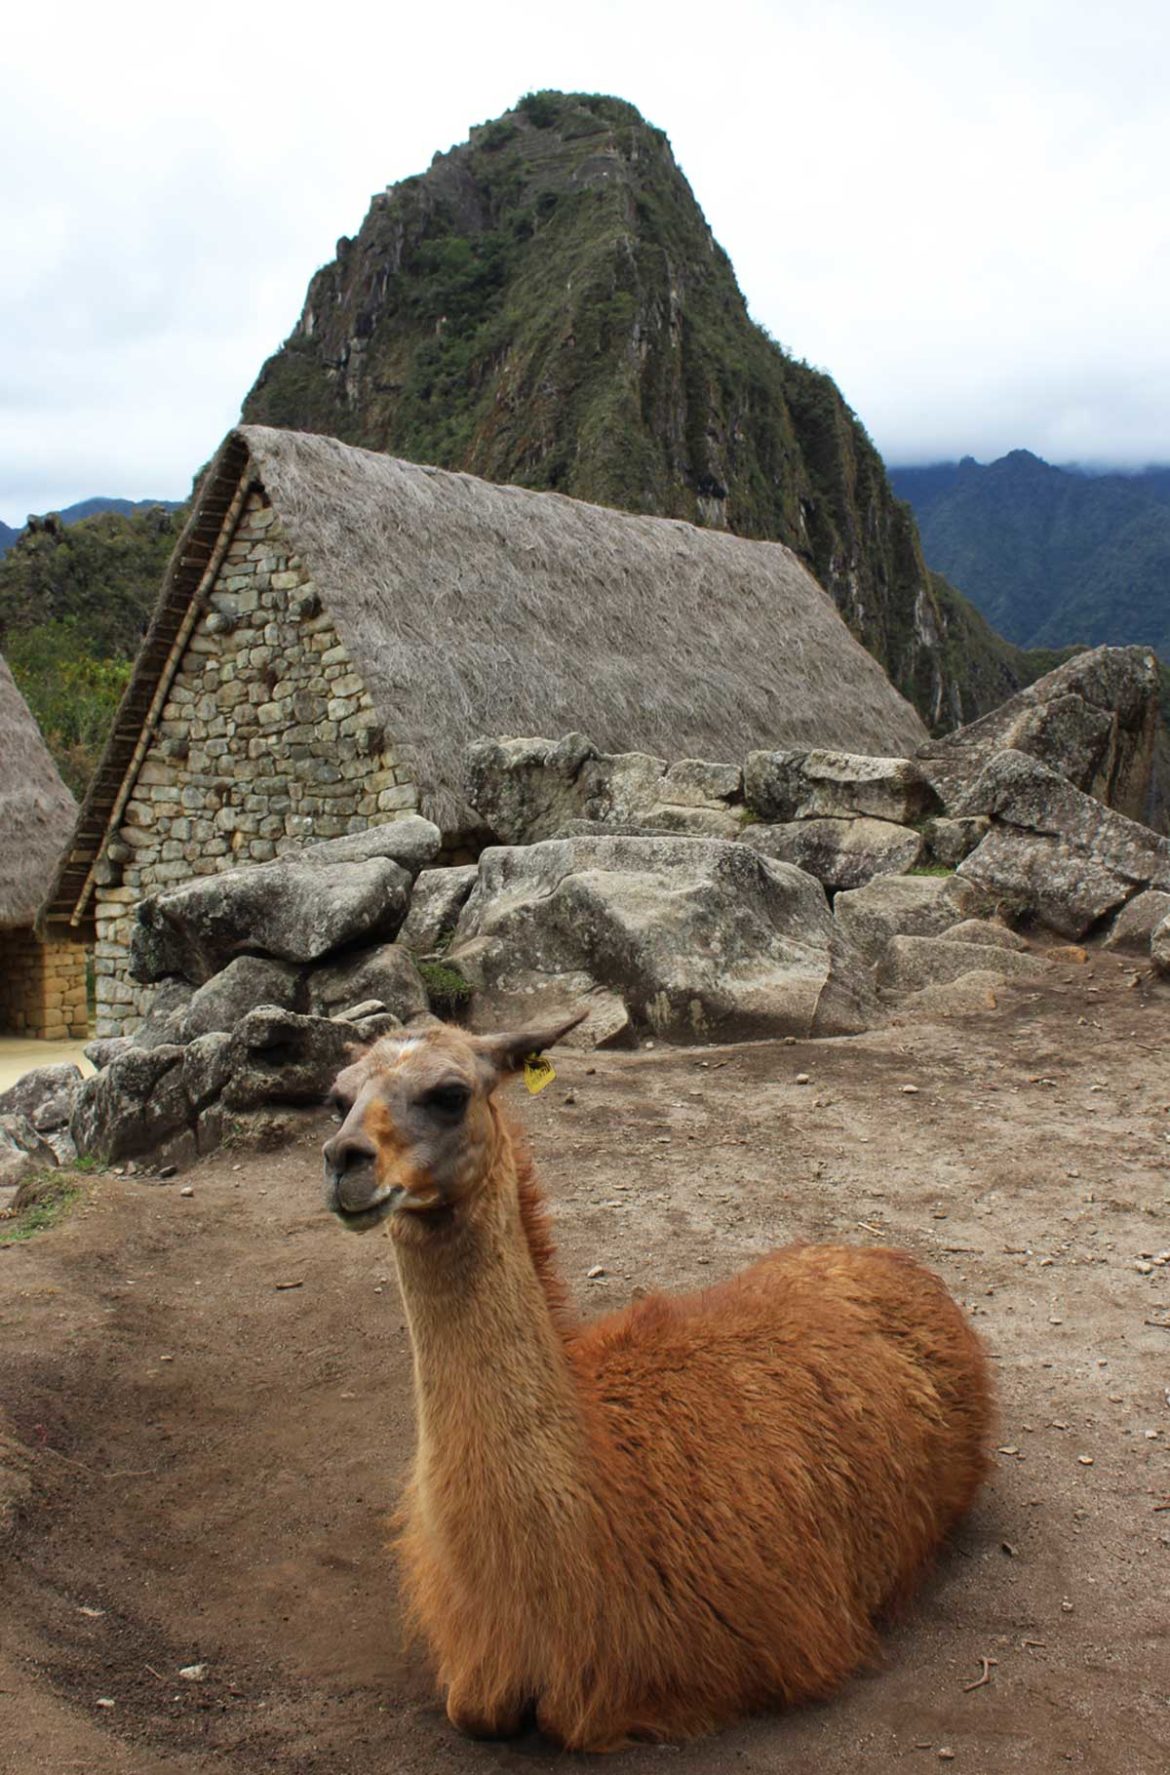 Fotos do Peru - Sítio arqueológico de Machu Picchu